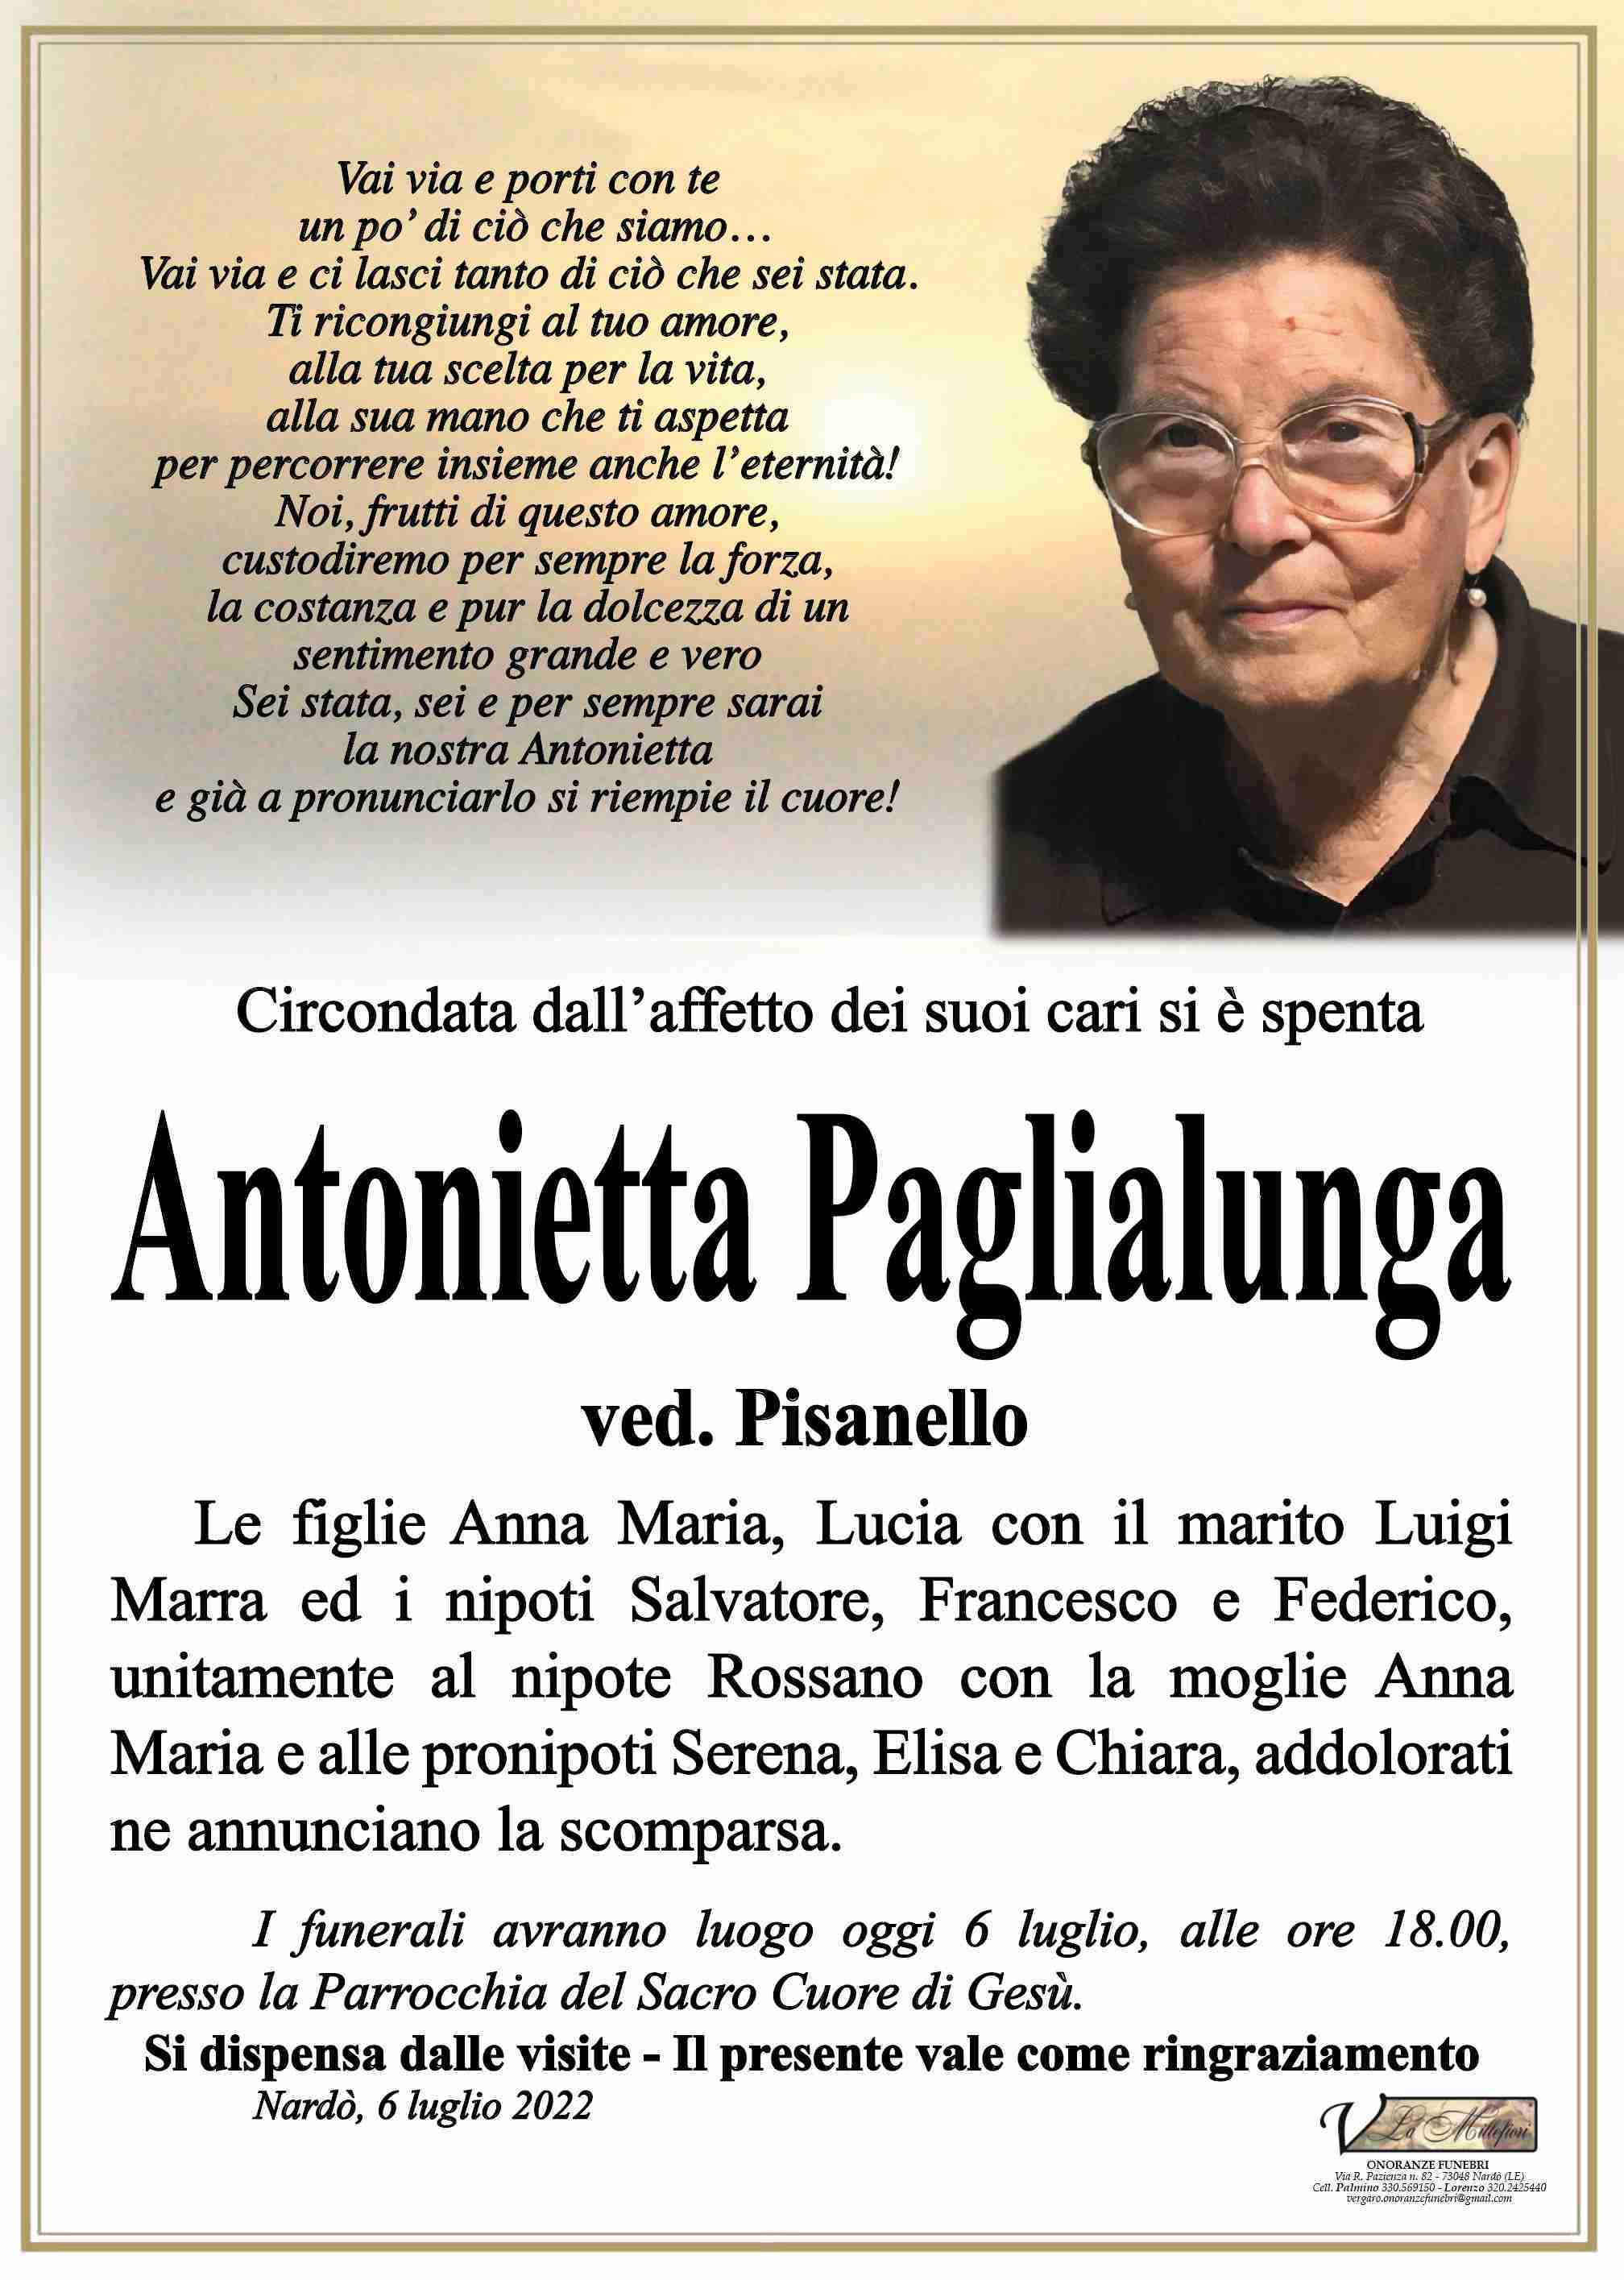 Antonietta Paglialunga